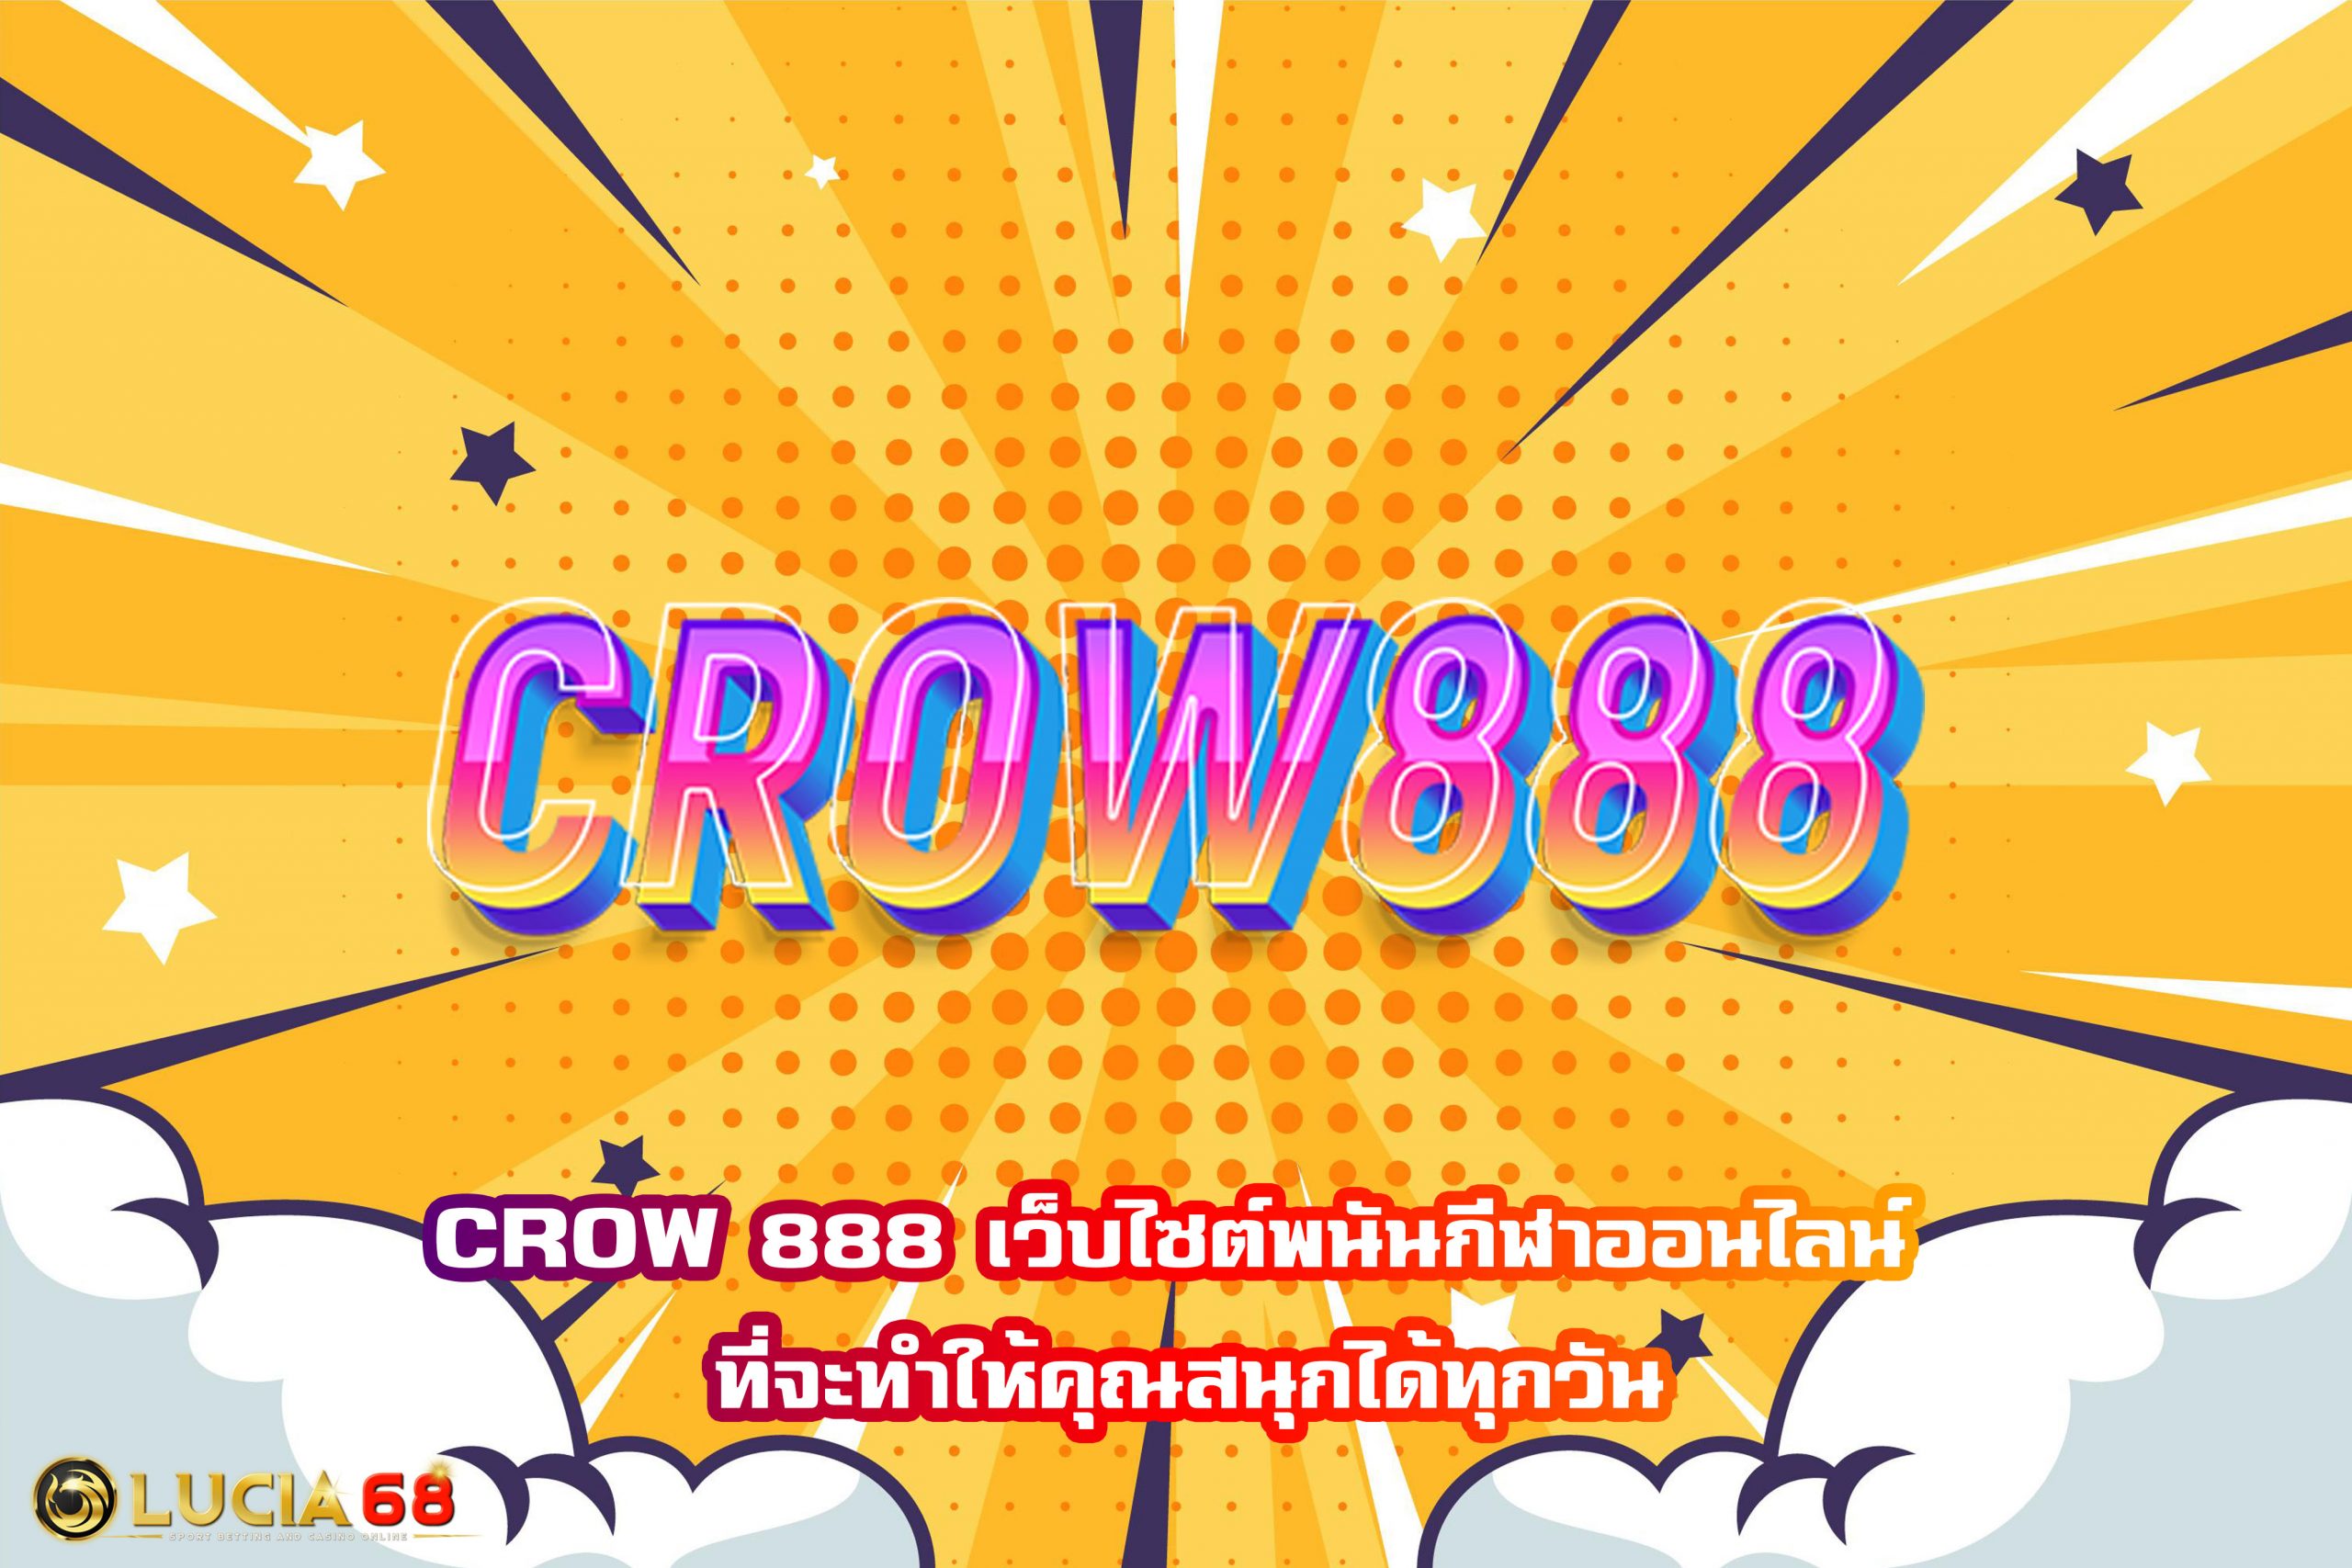 CROW 888 เว็บไซต์พนันกีฬาออนไลน์ ที่จะทำให้คุณสนุกได้ทุกวัน